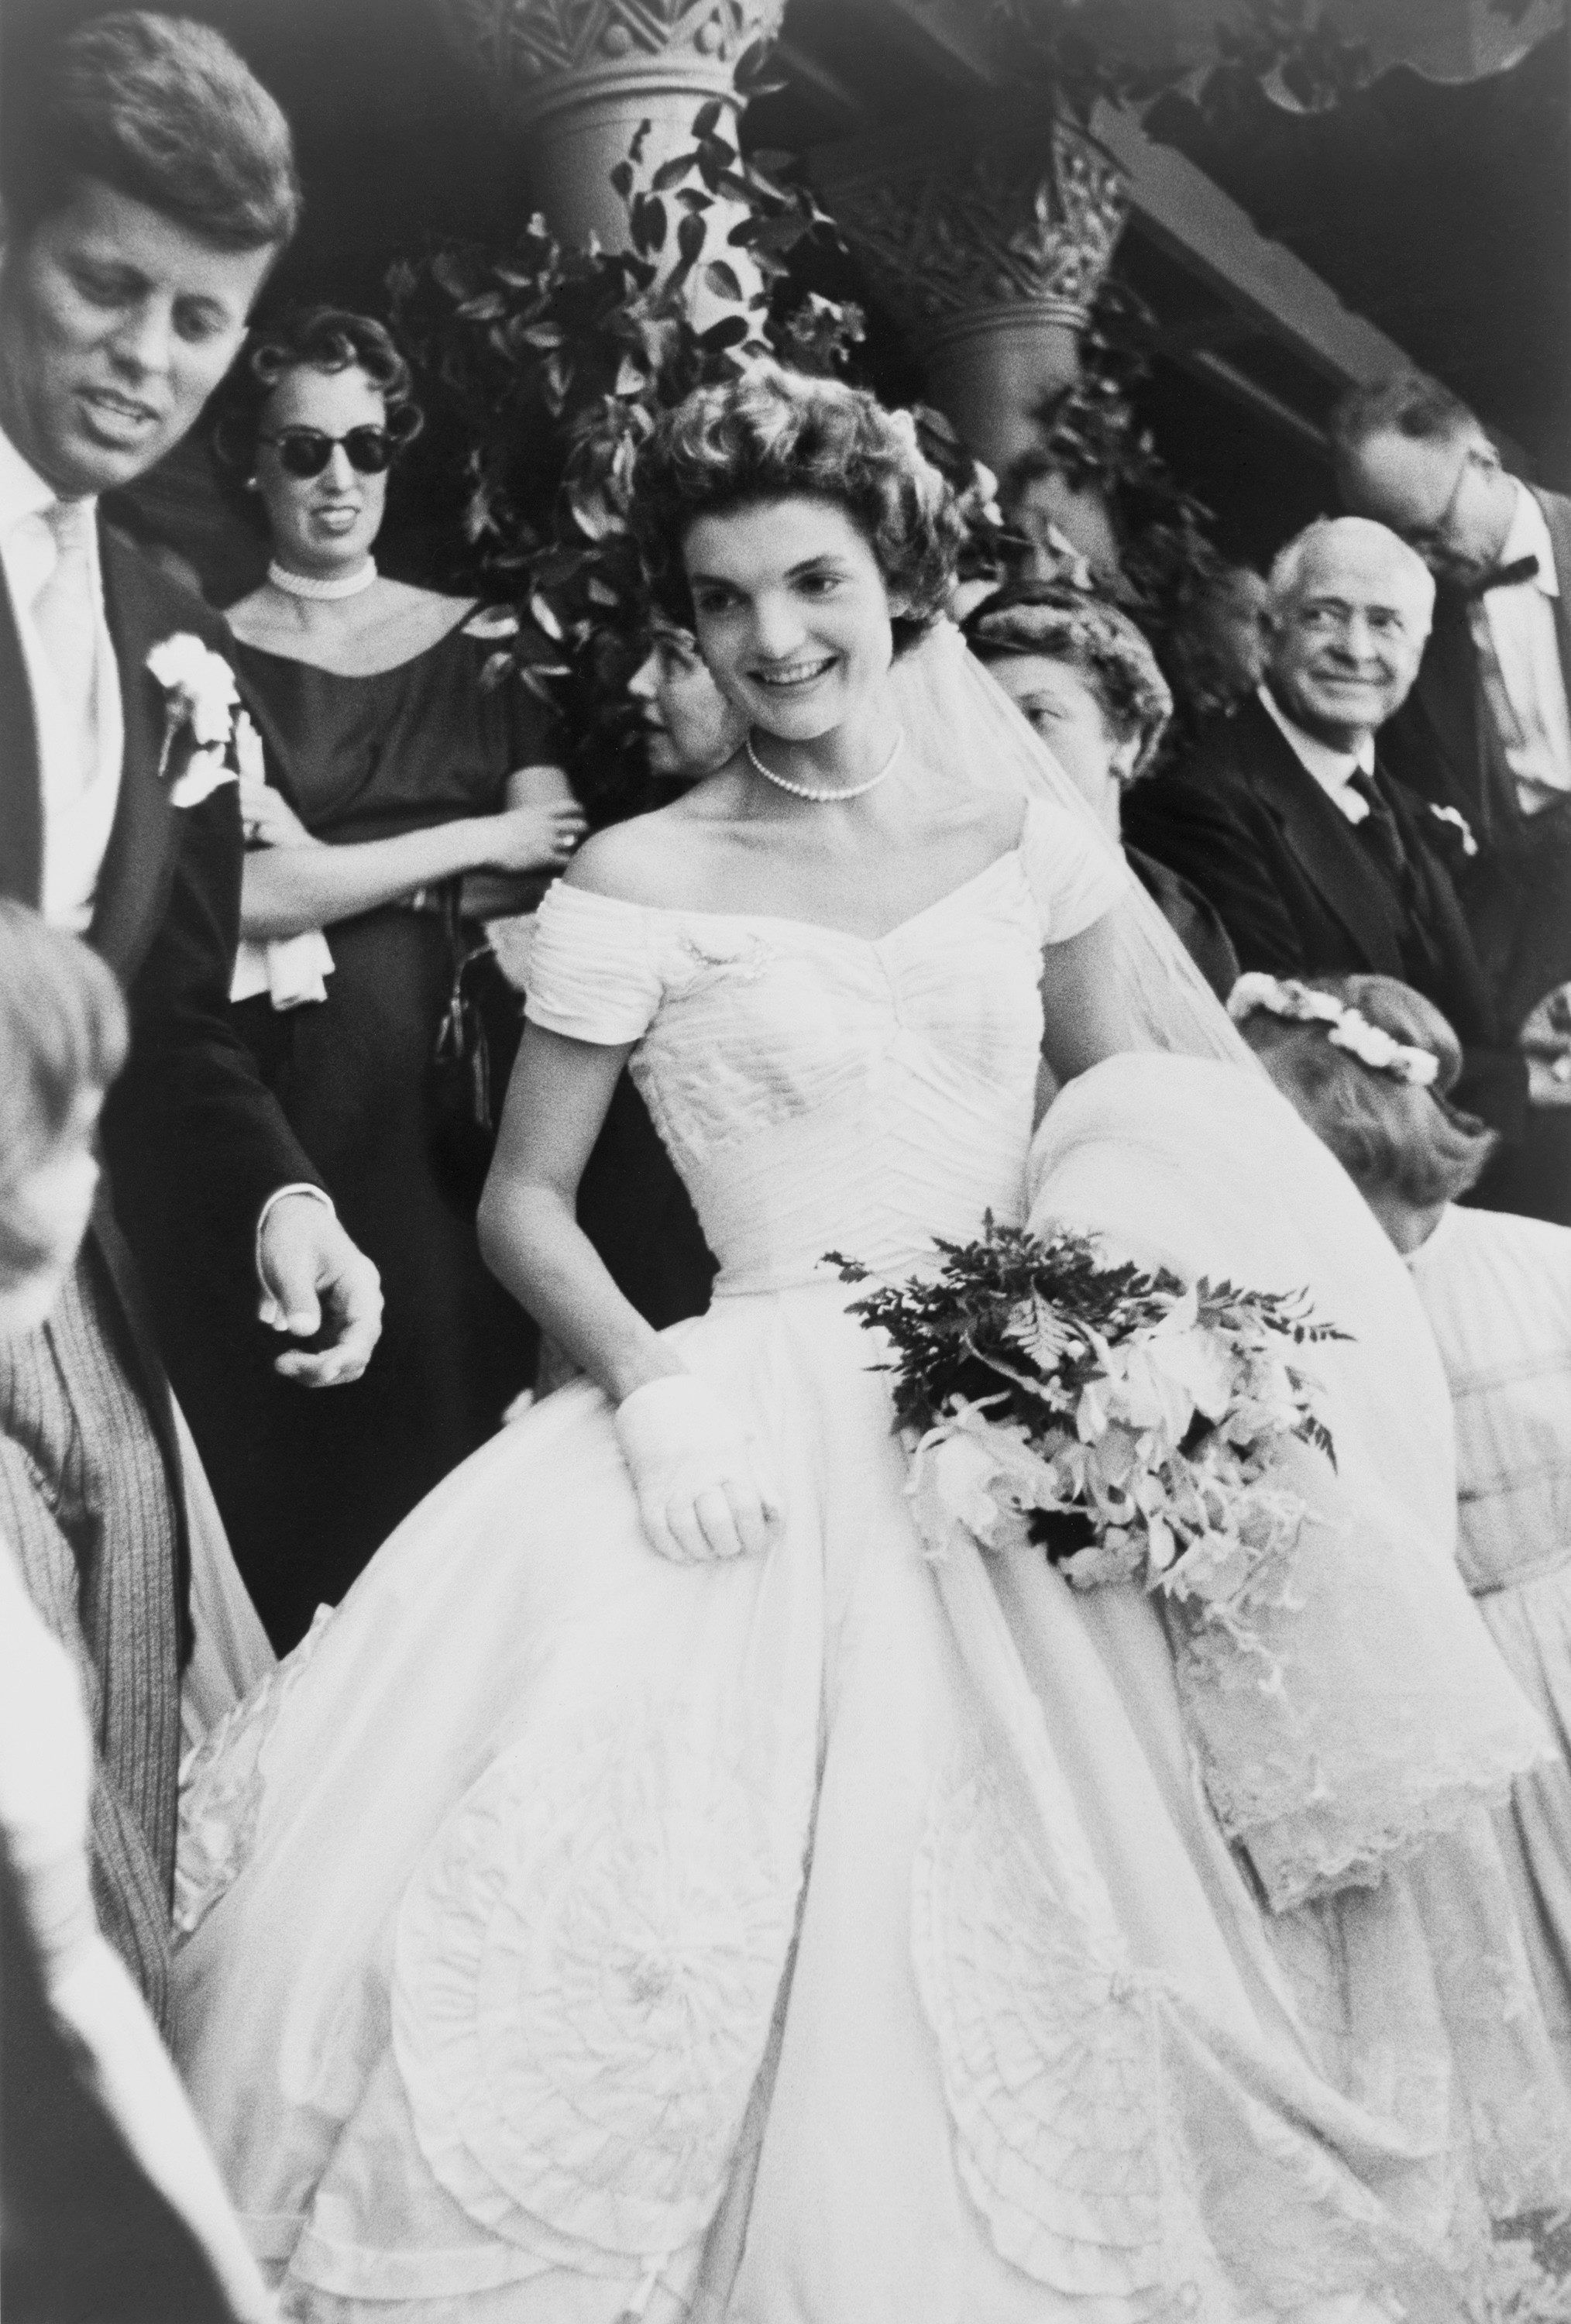 Jackie's wedding dress details